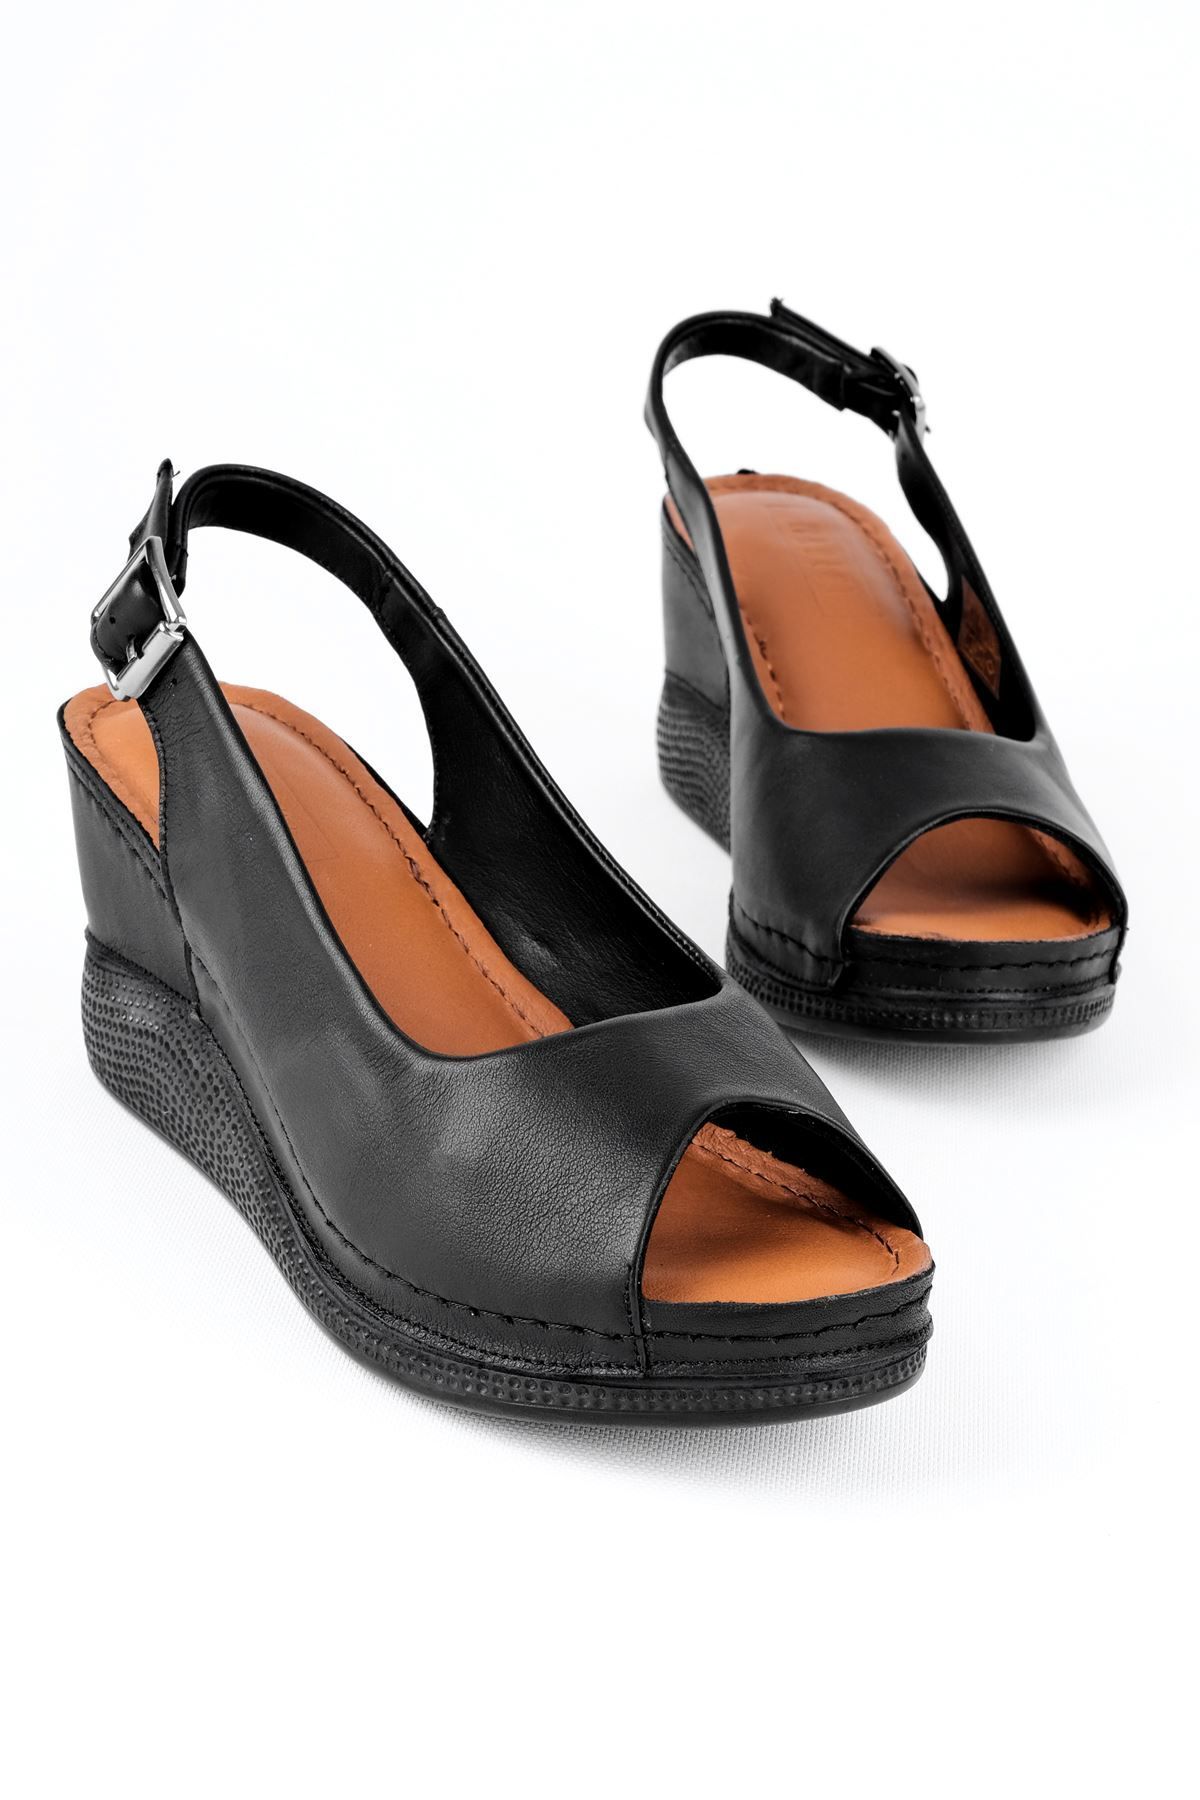 LAL SHOES & BAGS Merib Kadın Hakiki Deri Dolgulu Topuklu Günlük Ayakkabı-siyah